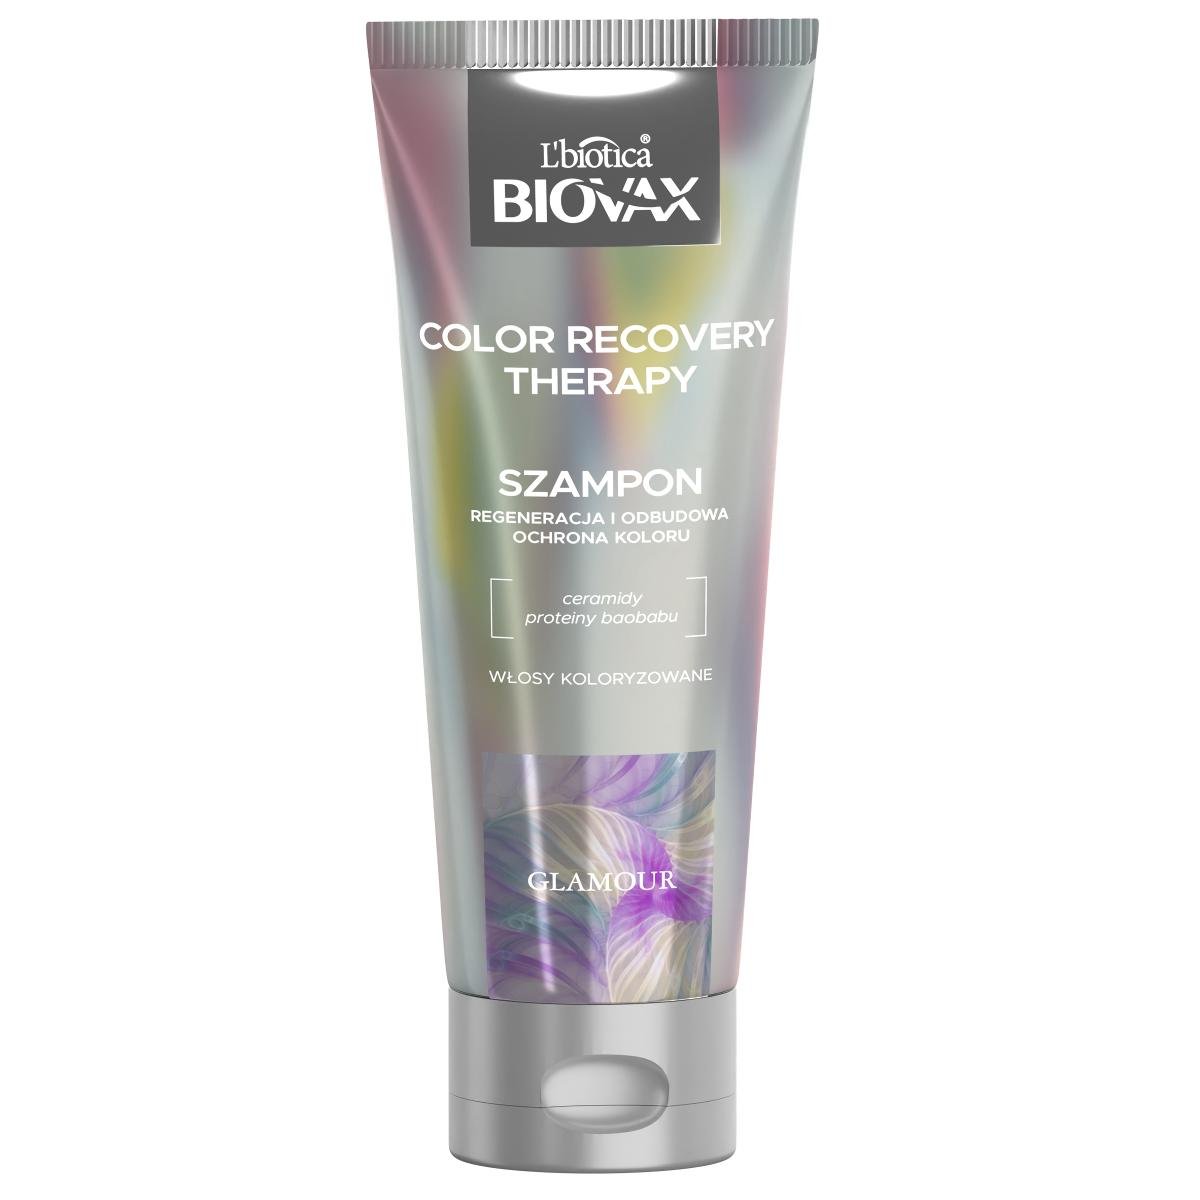 biovax szampon do wlosow farbowanych